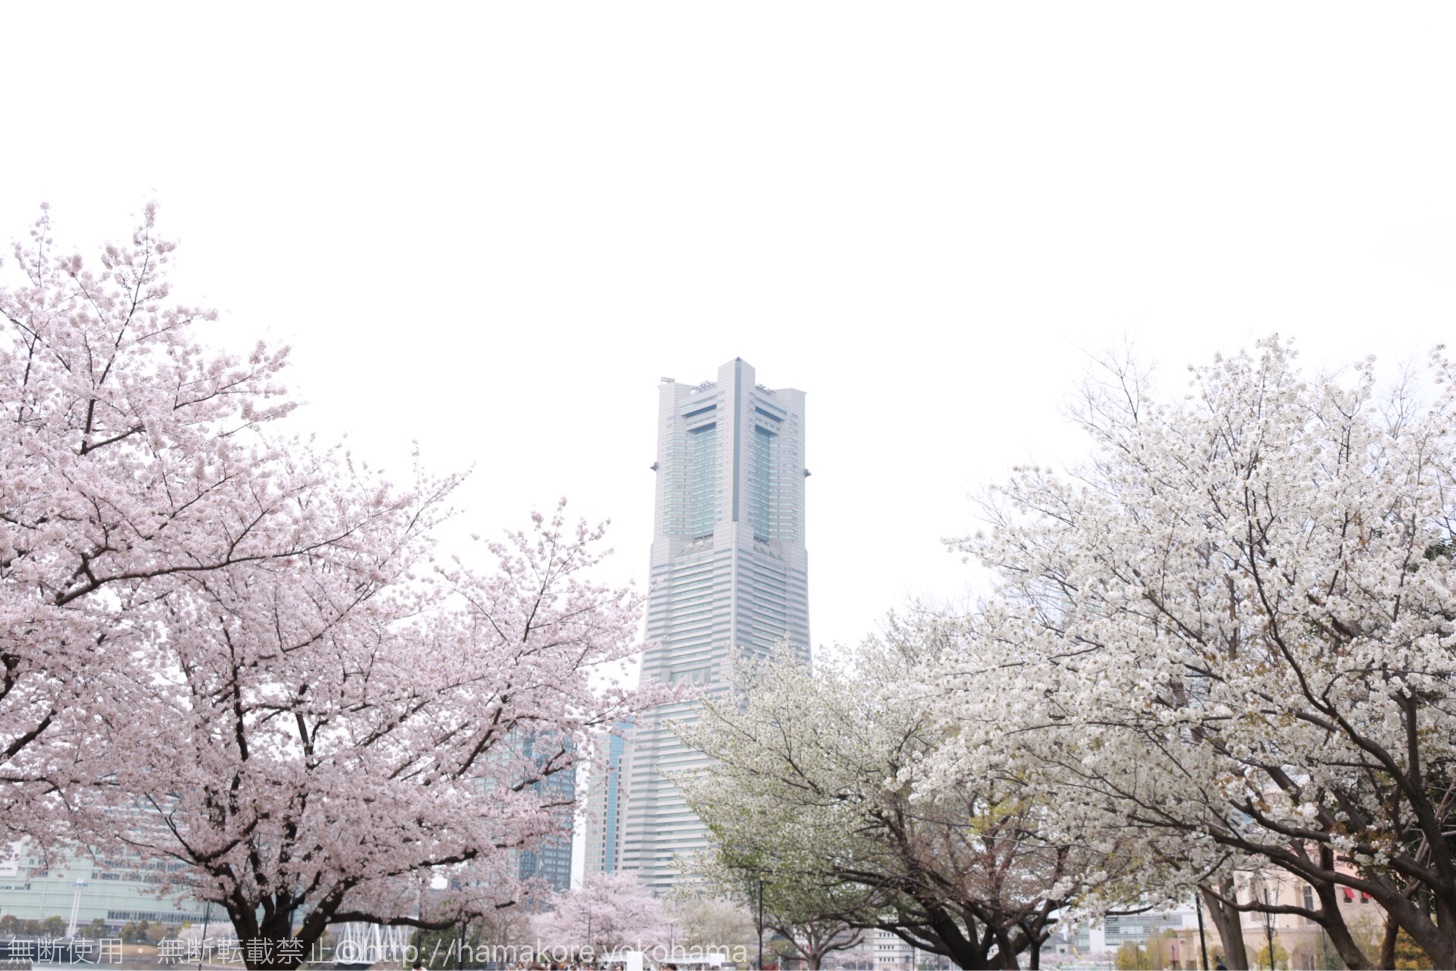 横浜ワールドポーターズの前の広場でお花見